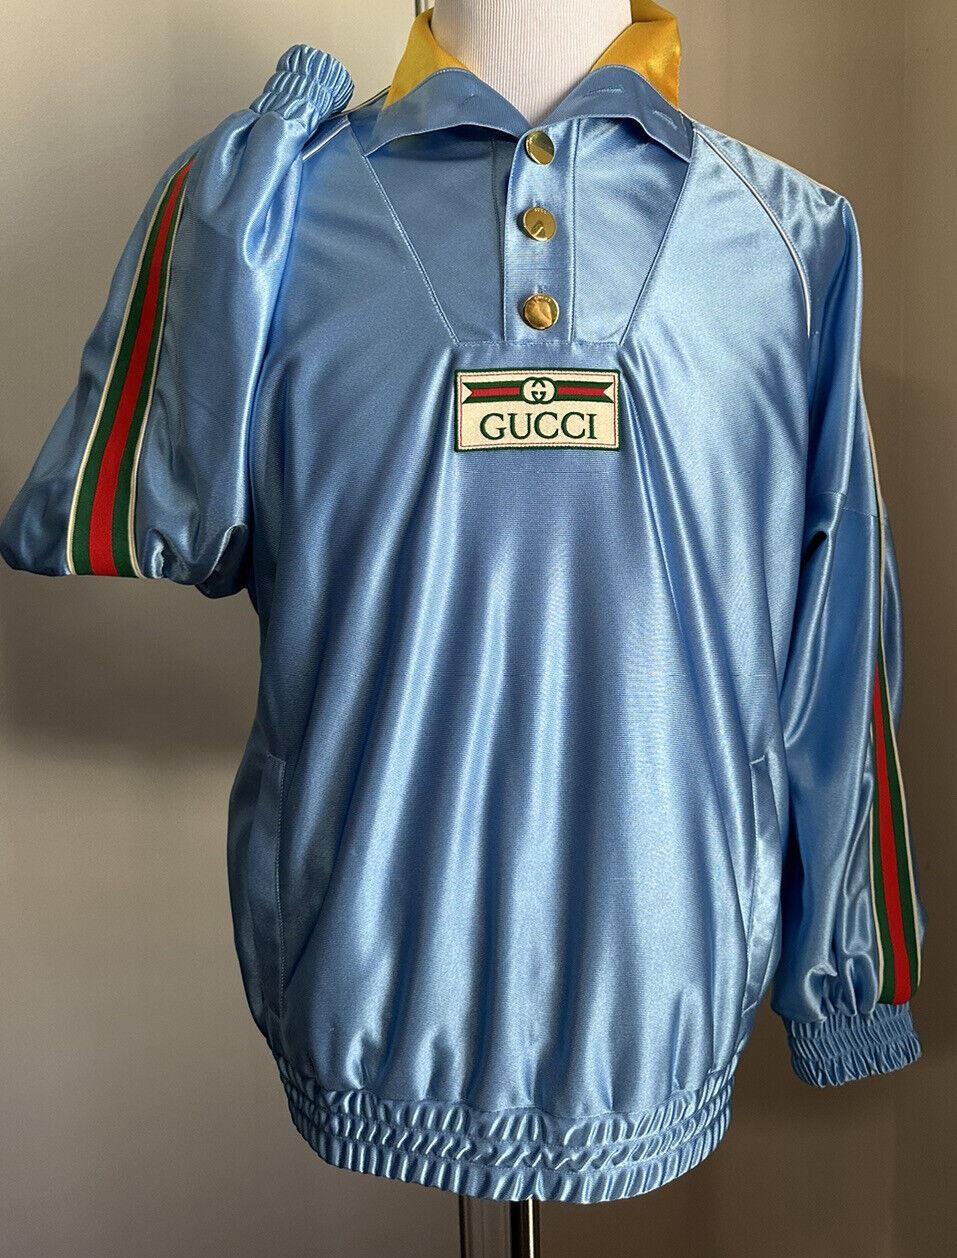 Neu mit Etikett: 1.650 $ Gucci Herren-Trainingsjacke aus technischem Polyester in Übergröße, leuchtendes Blau S